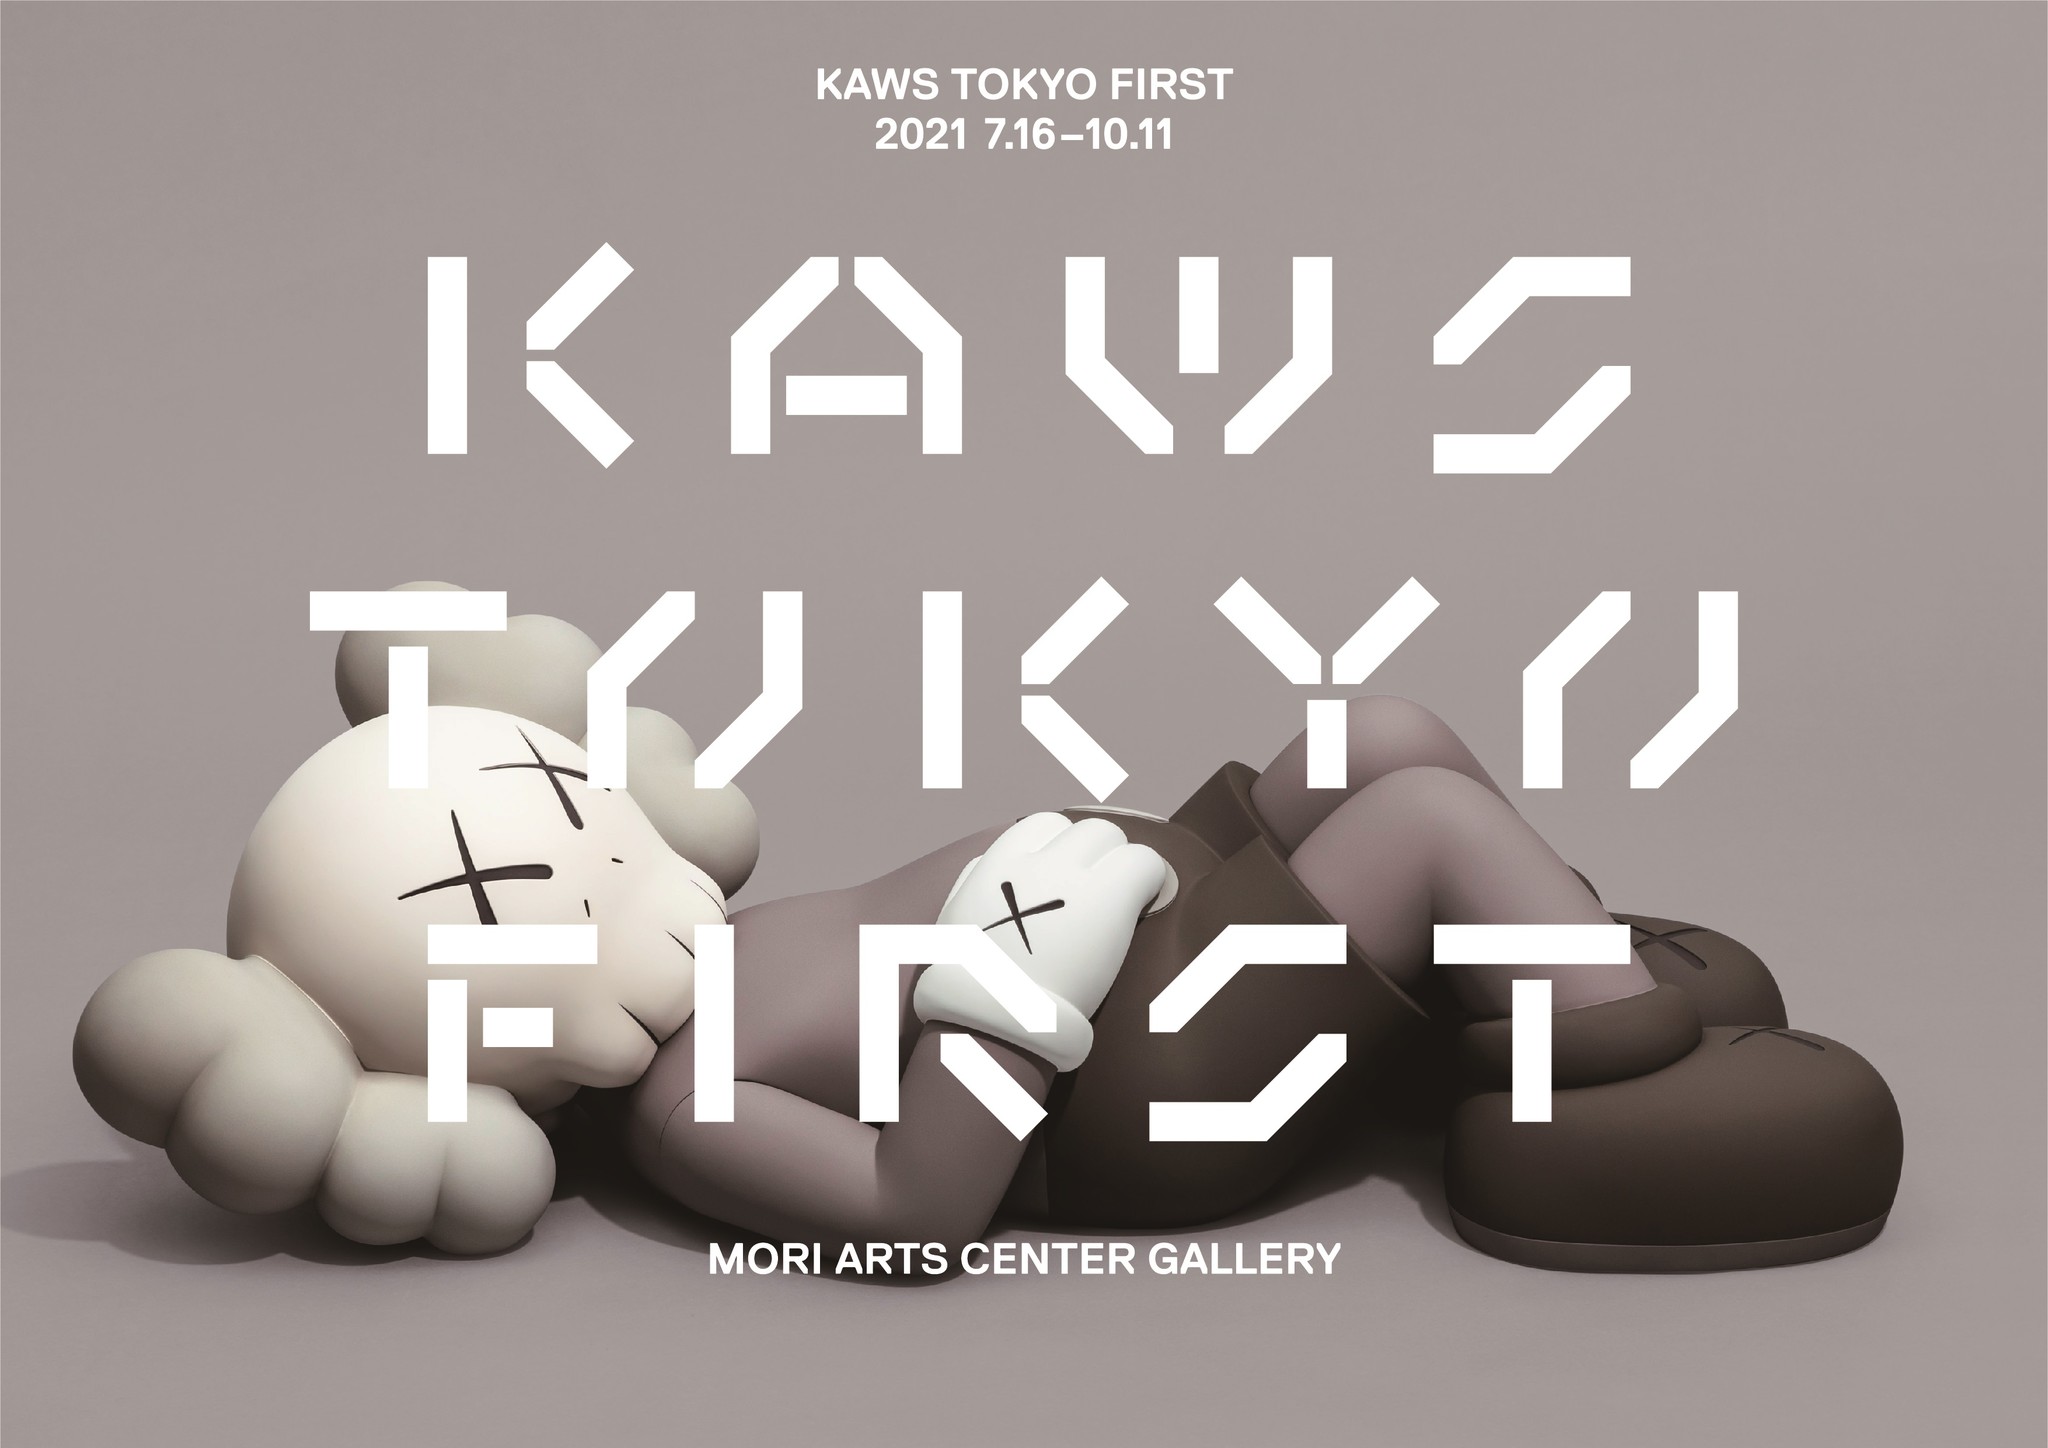 カウズポスター kaws tokyo first 3種セット www.krzysztofbialy.com